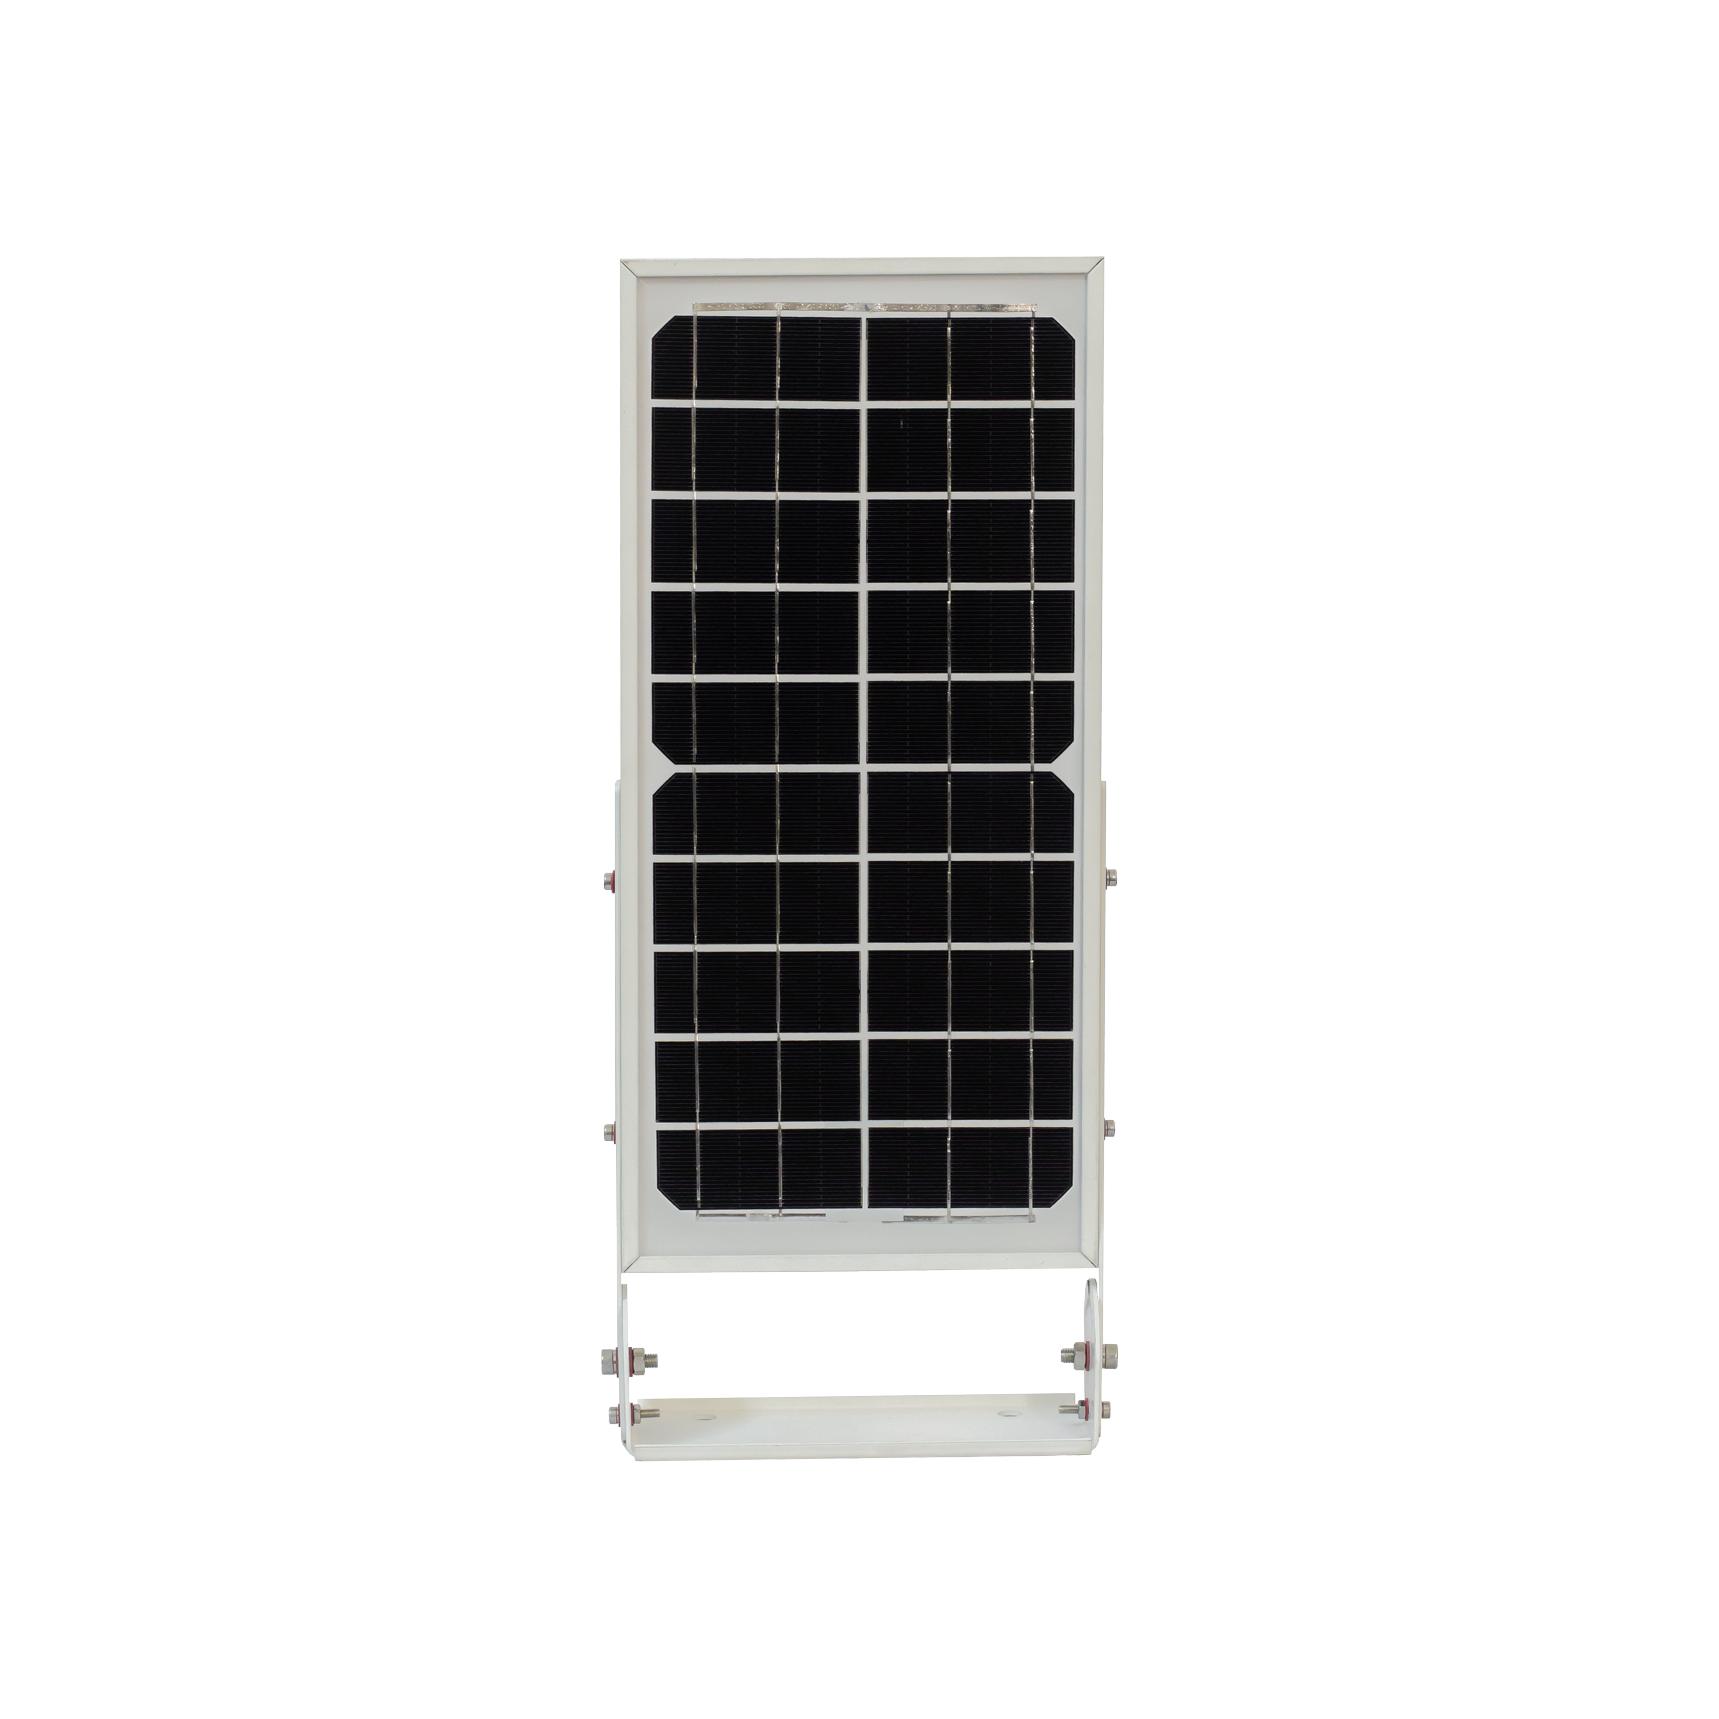 Đèn sân vườn năng lượng mặt trời cao cấp tích hợp cảm biến thông minh VK200A – 15W